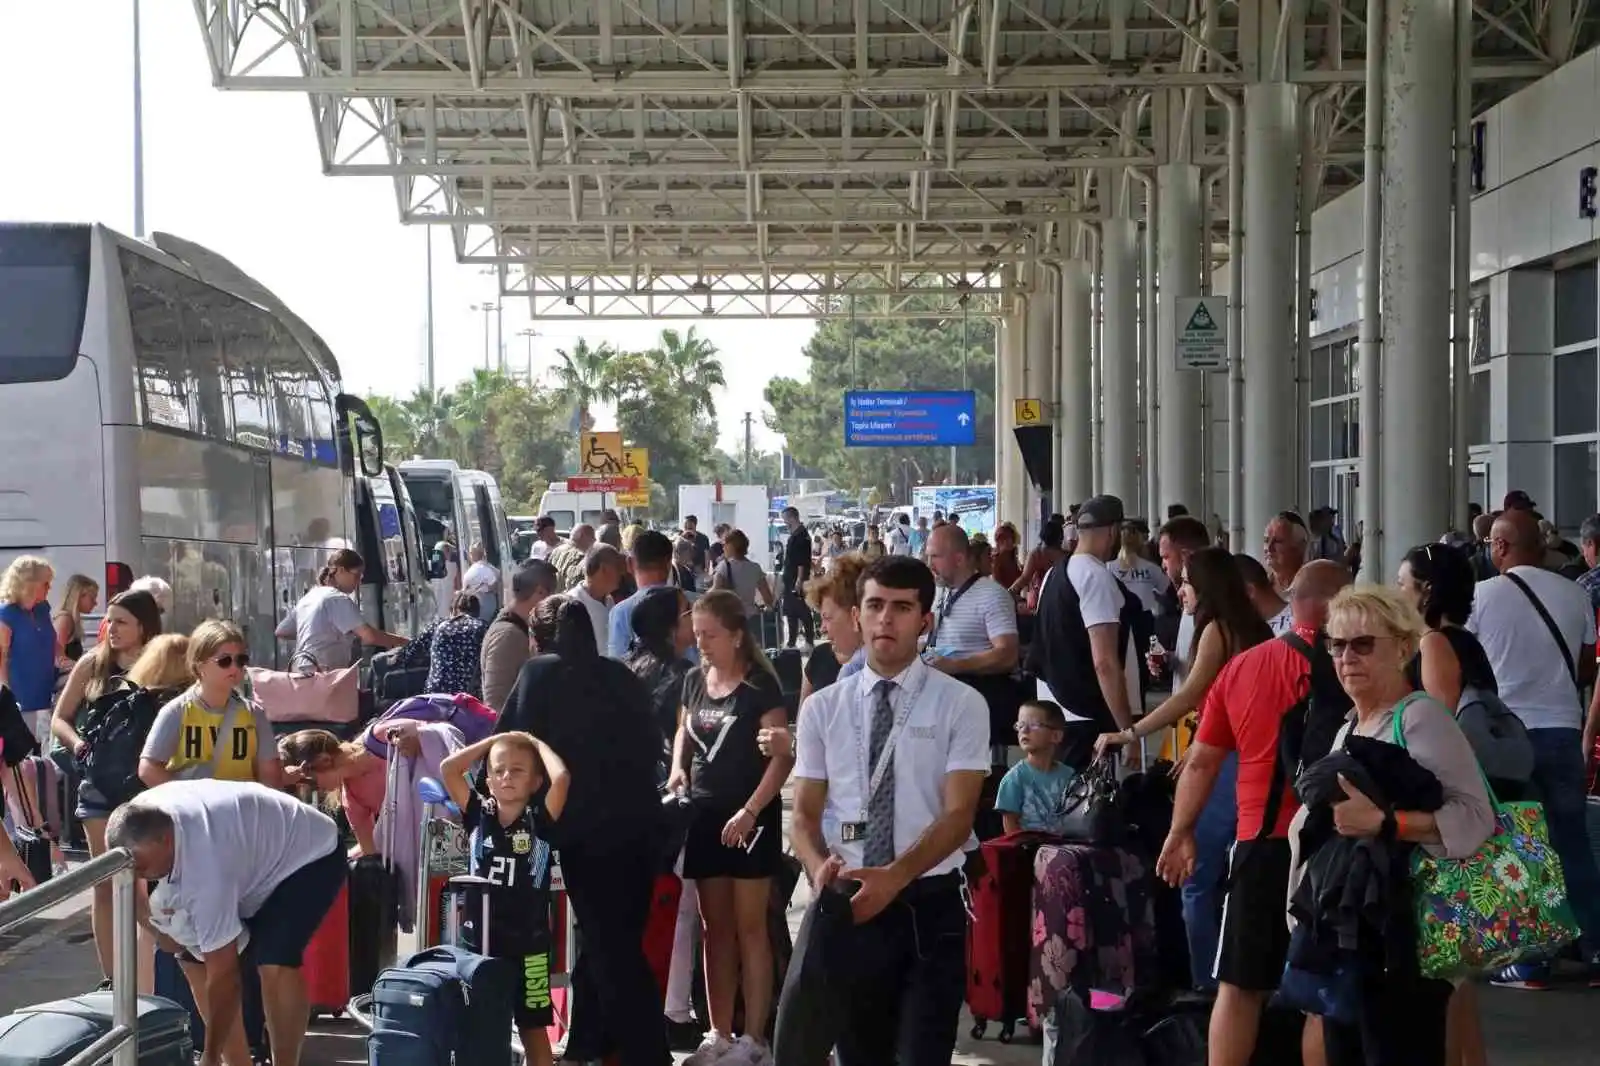 Seferberlik sonrası Rusya’dan Antalya’ya gelen günlük 80 uçağa 3-4 sefer ilave edilmiş durumda
